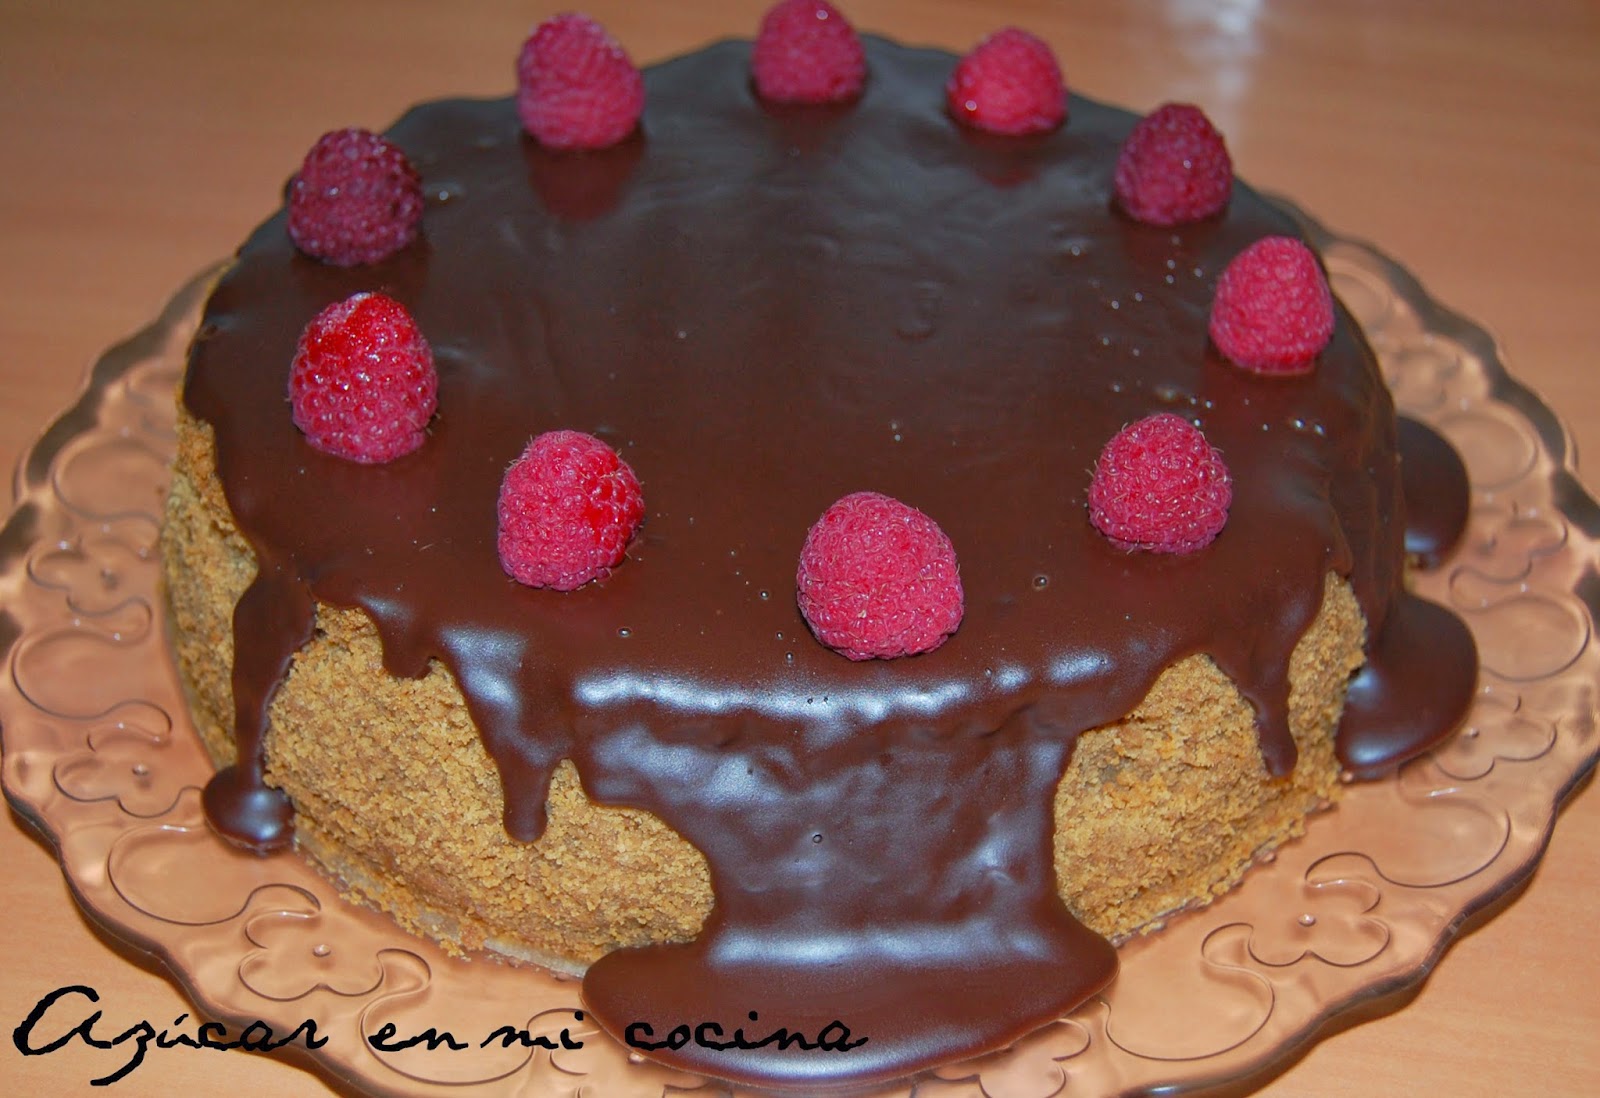 http://azucarenmicocina.blogspot.com.es/2014/03/cheesecake-de-crema-de-orujo.html